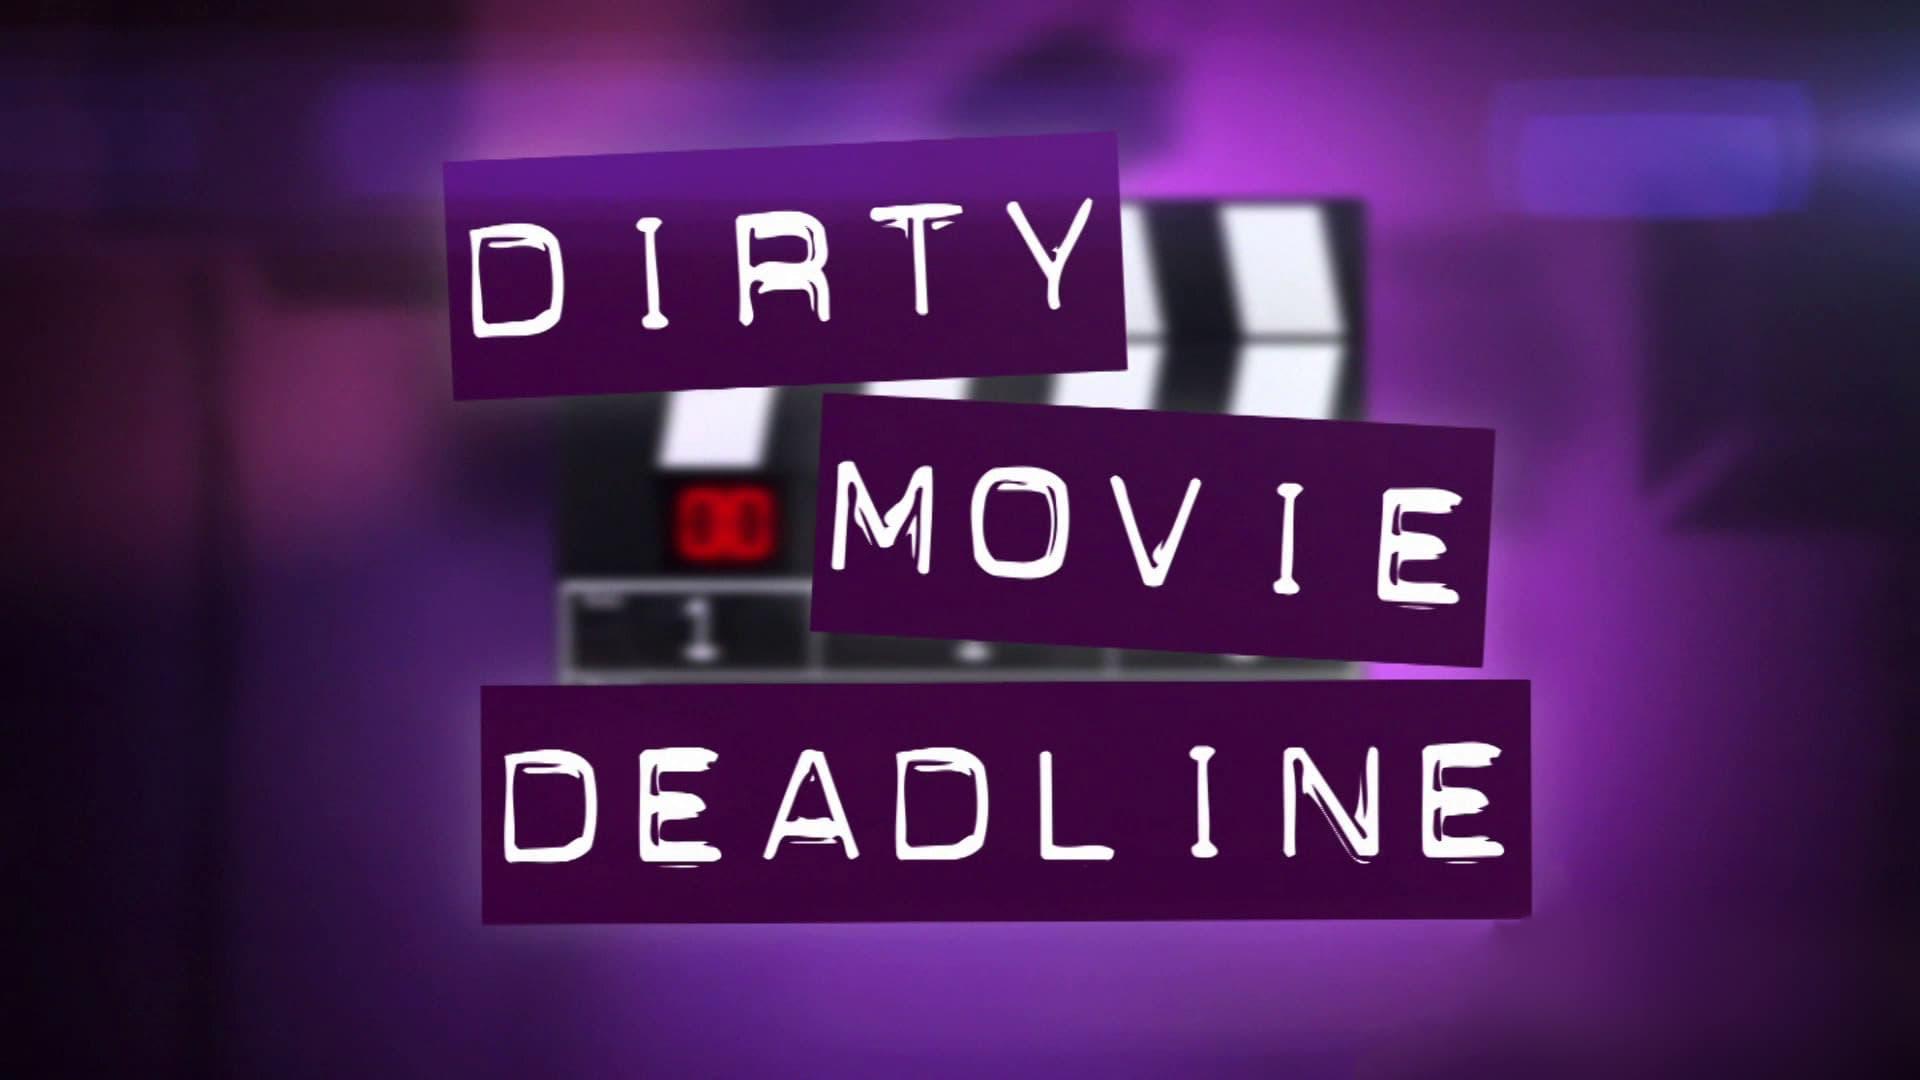 Dirty Movie Deadline backdrop